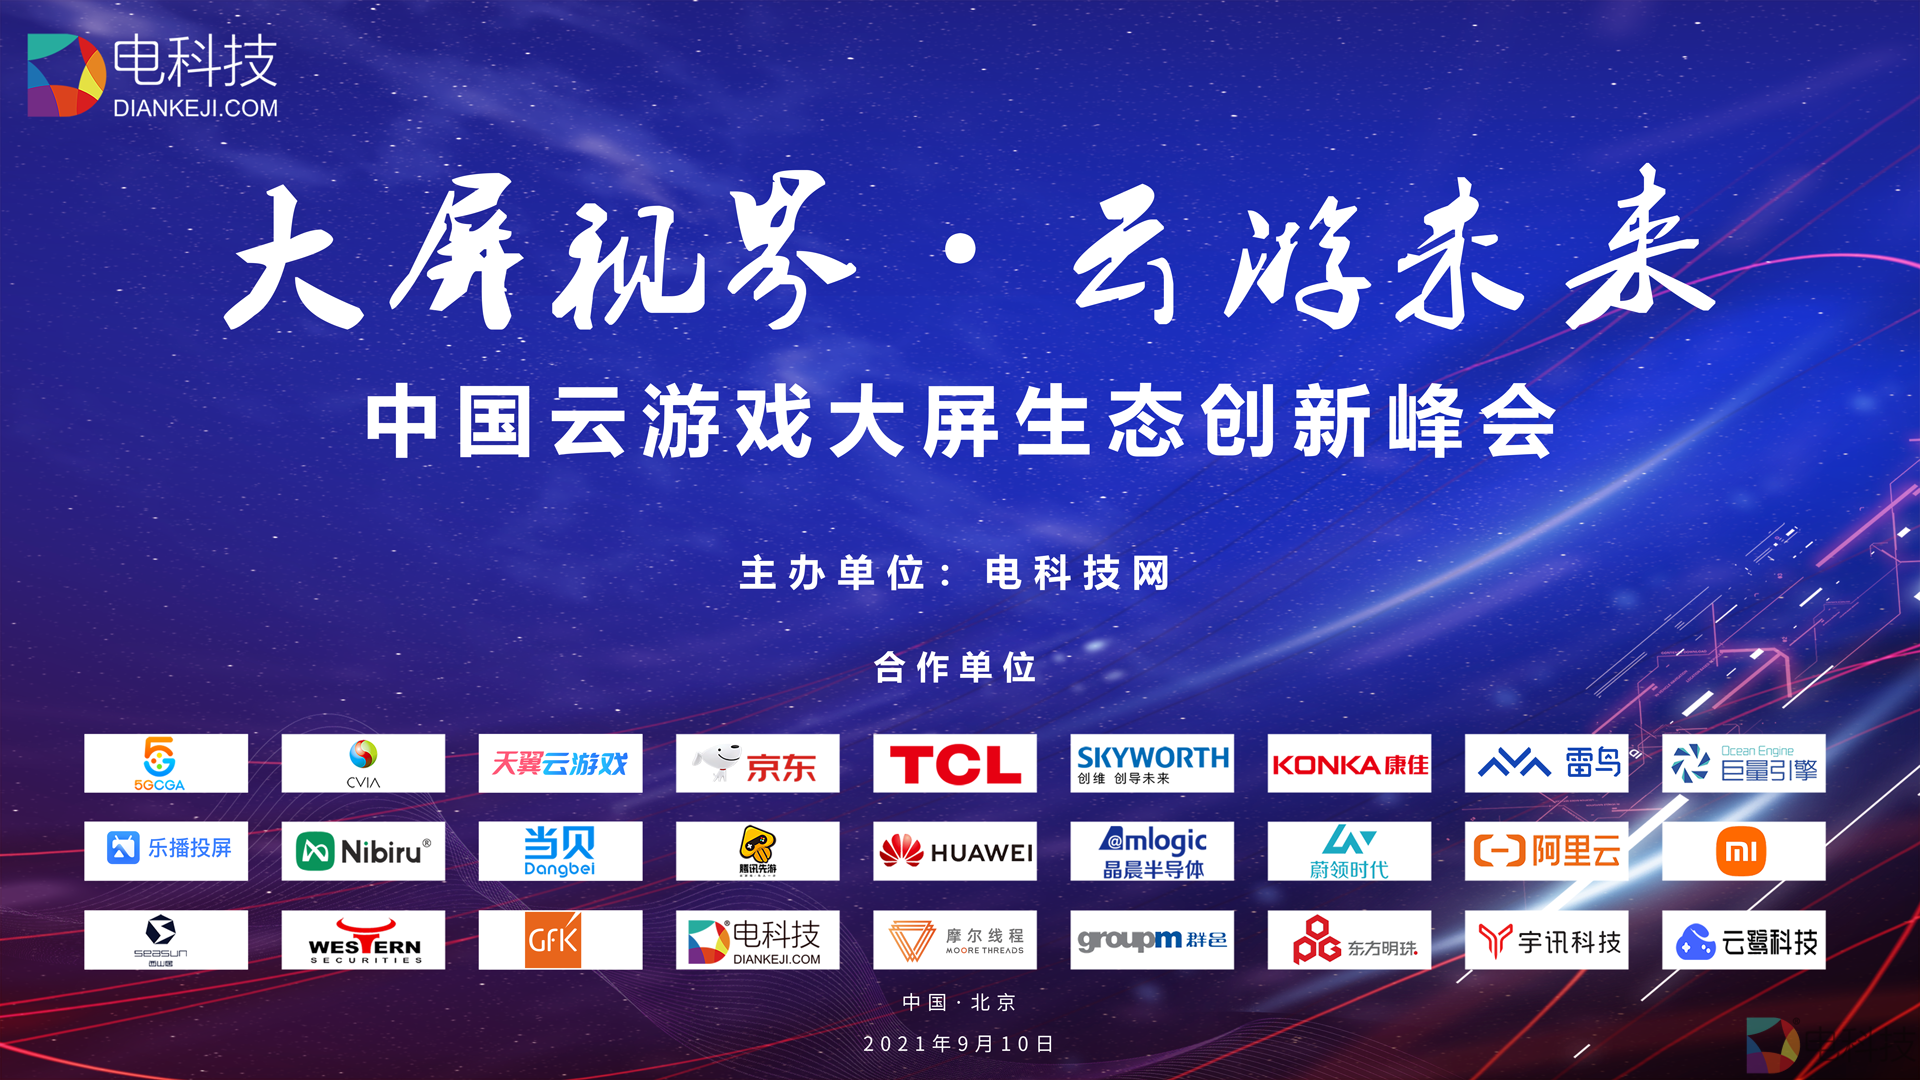 中国大屏云游戏峰会9月10日开幕，电科技邀您共同见证游戏大变革